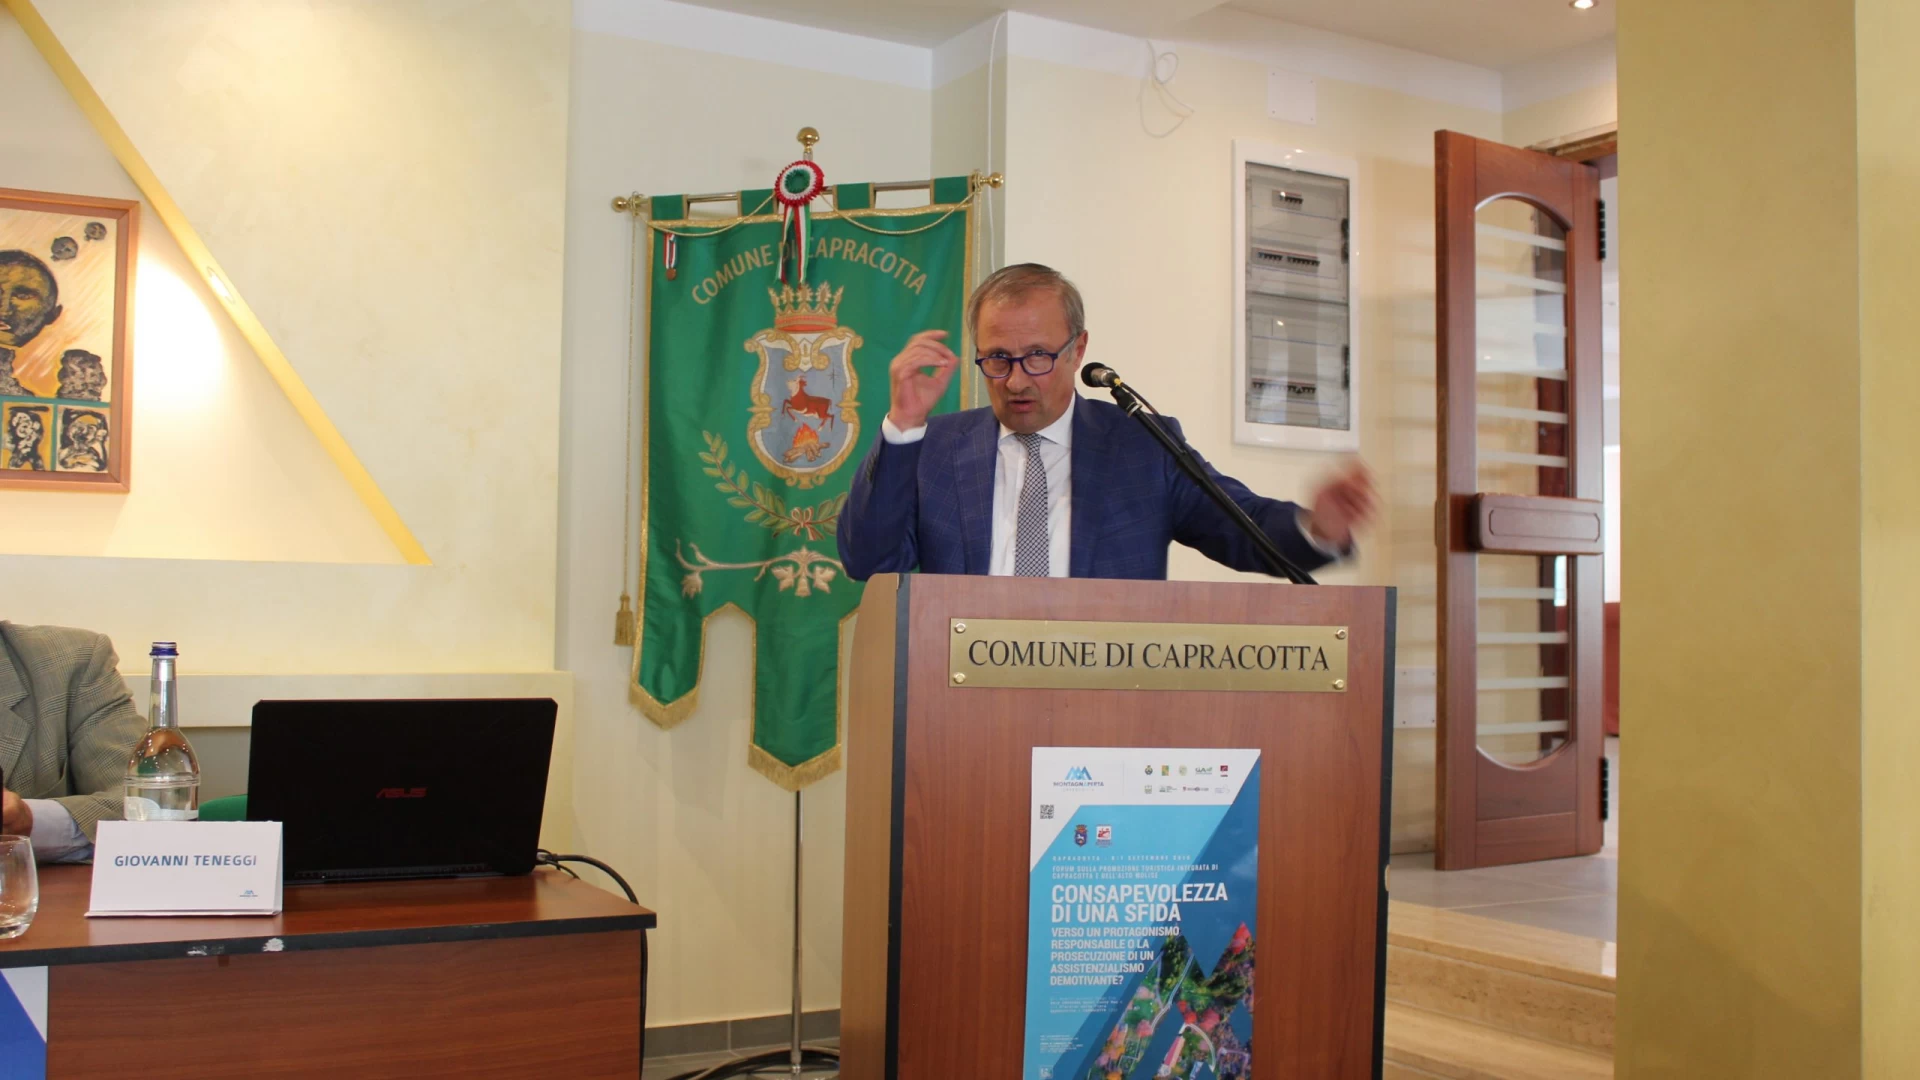 Combattere gli sprechi alimentari. Se ne discute a Capracotta. Il sindaco Paglione: “Una sfida etica e ambientale”.